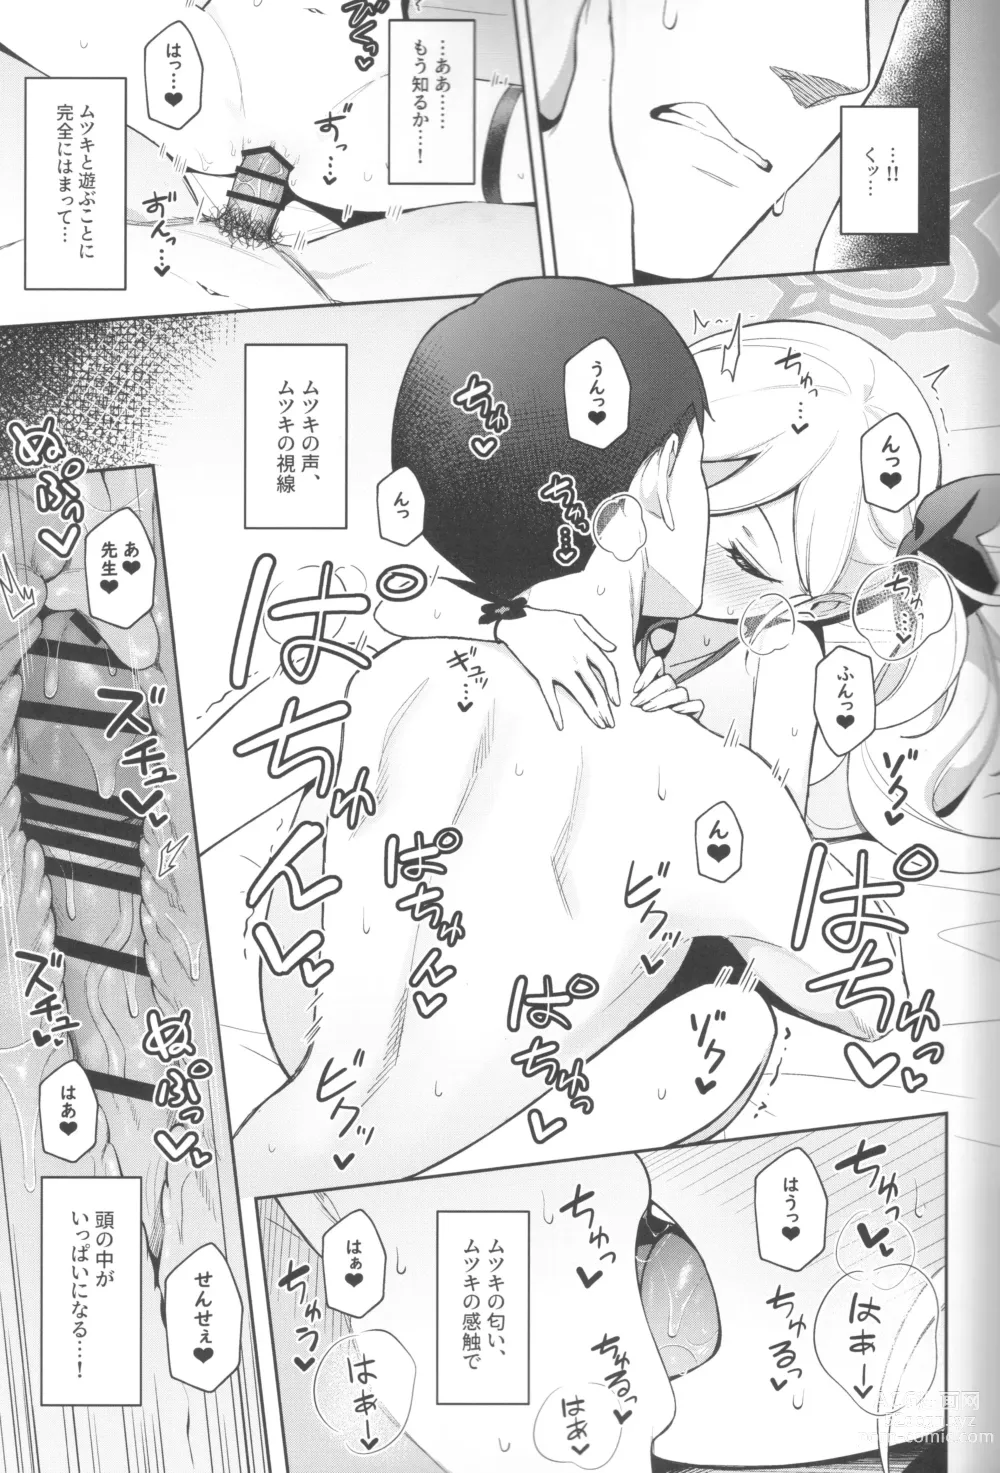 Page 17 of doujinshi Mutsuki wa Otona no Asobi ga Shitai